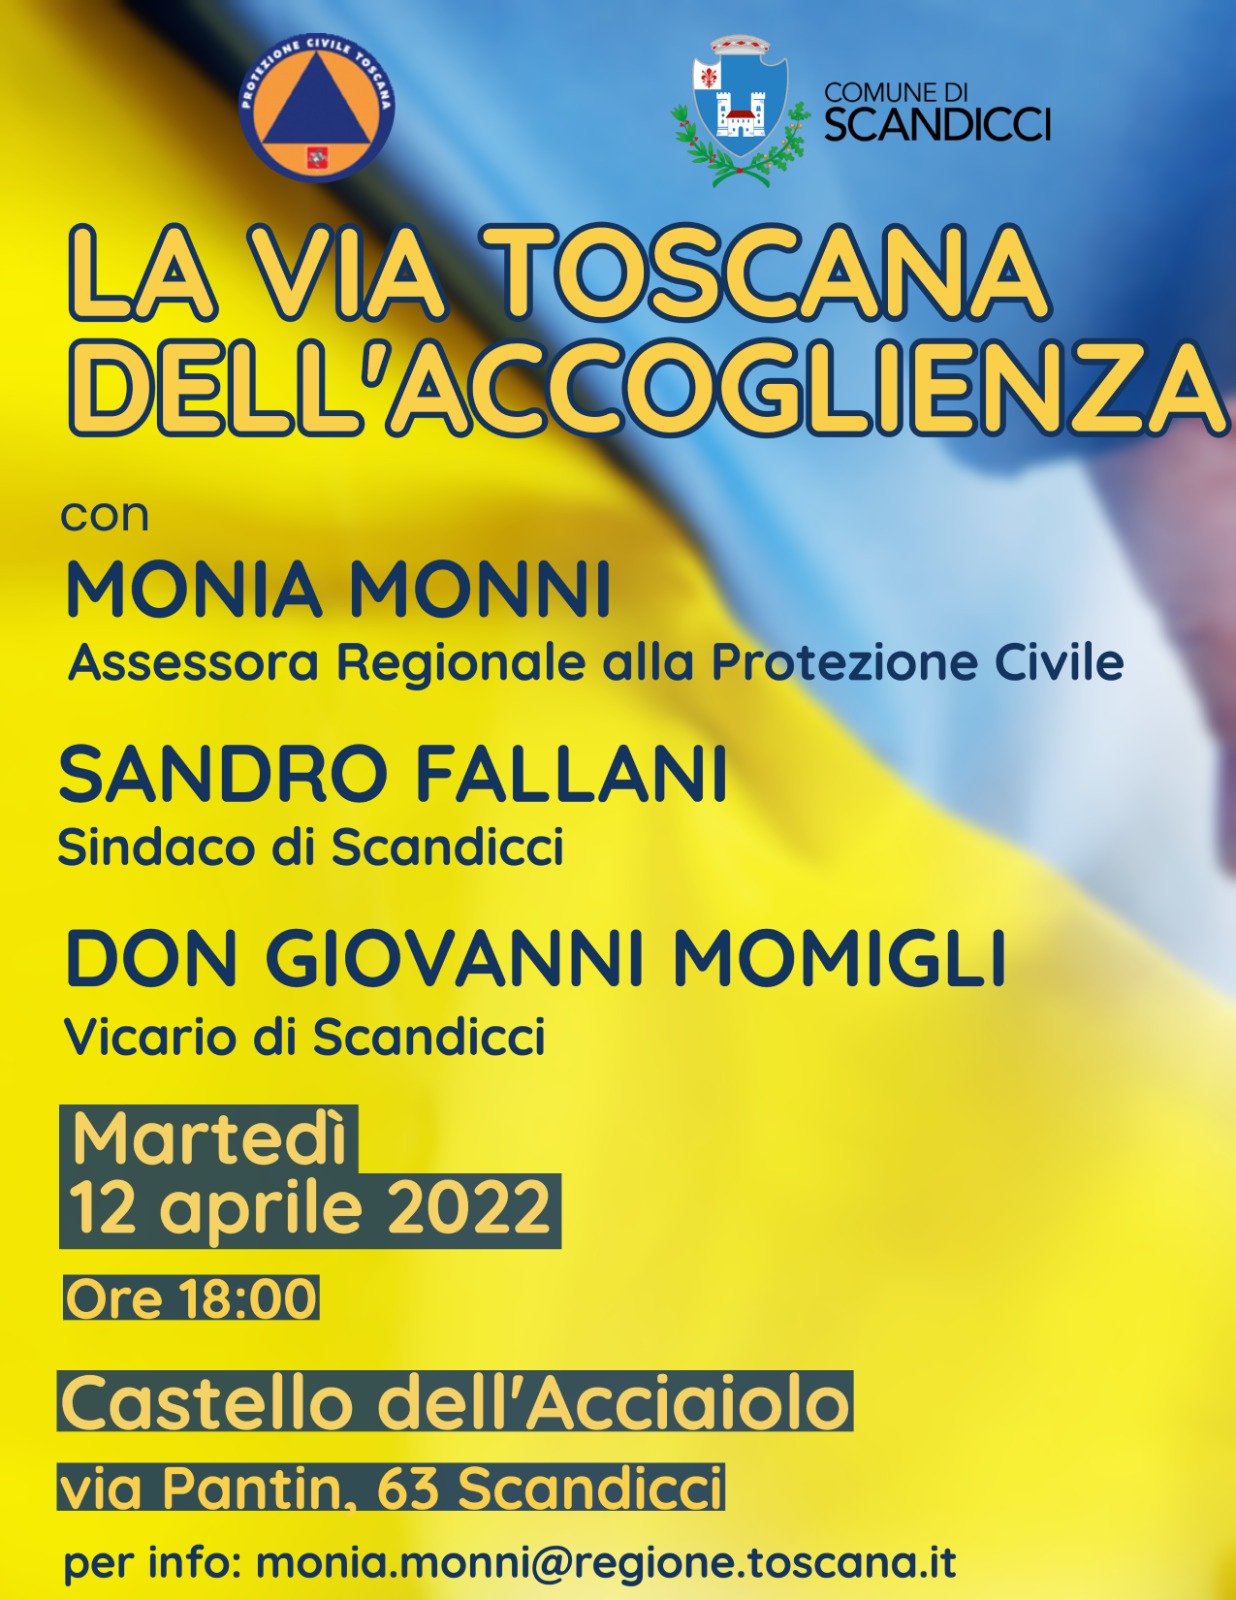 La via Toscana dell’accoglienza: dibattito a Scandicci con Monni, Fallani e don Momigli